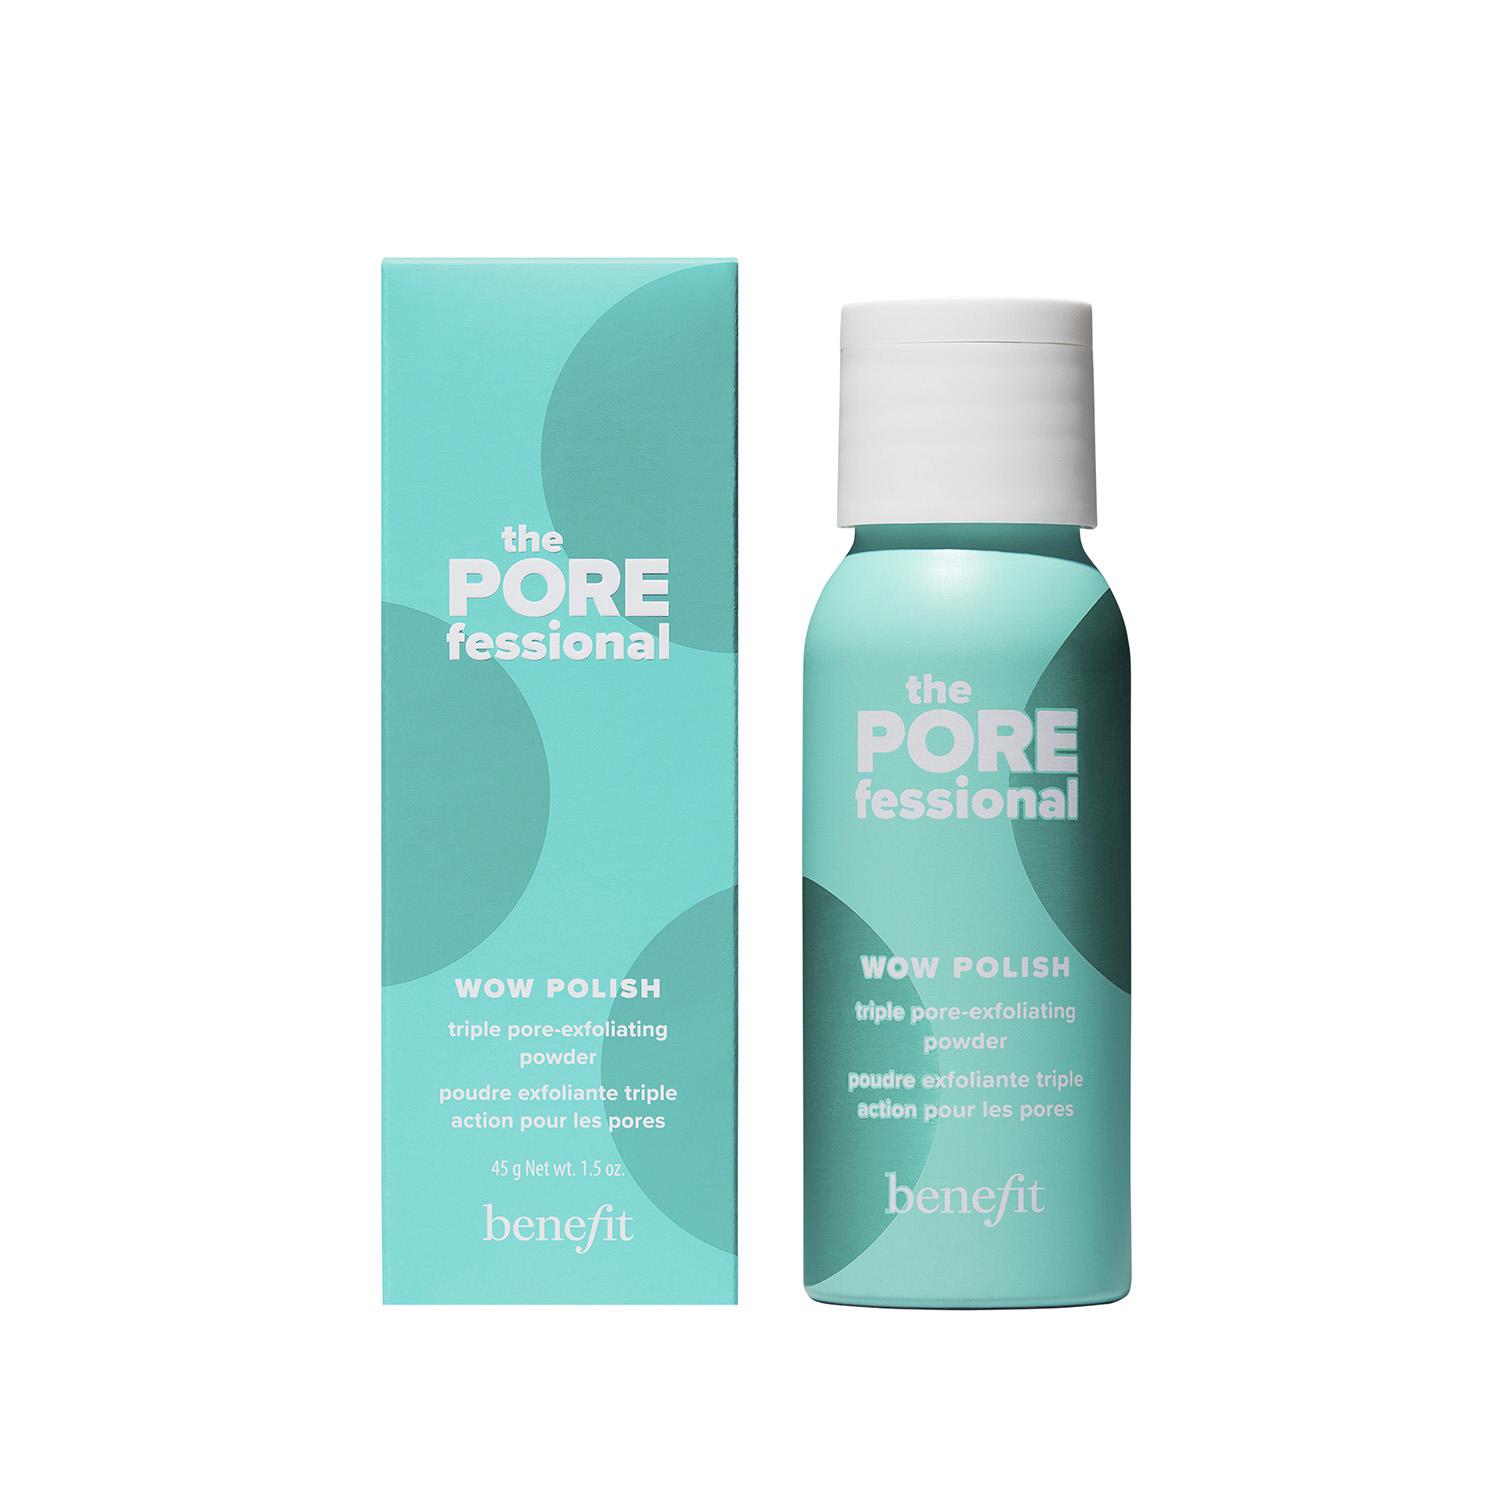 the porefessional wow polish: polvo exfoliante triple para poros (polvo exfoliante para cuidado de poros)